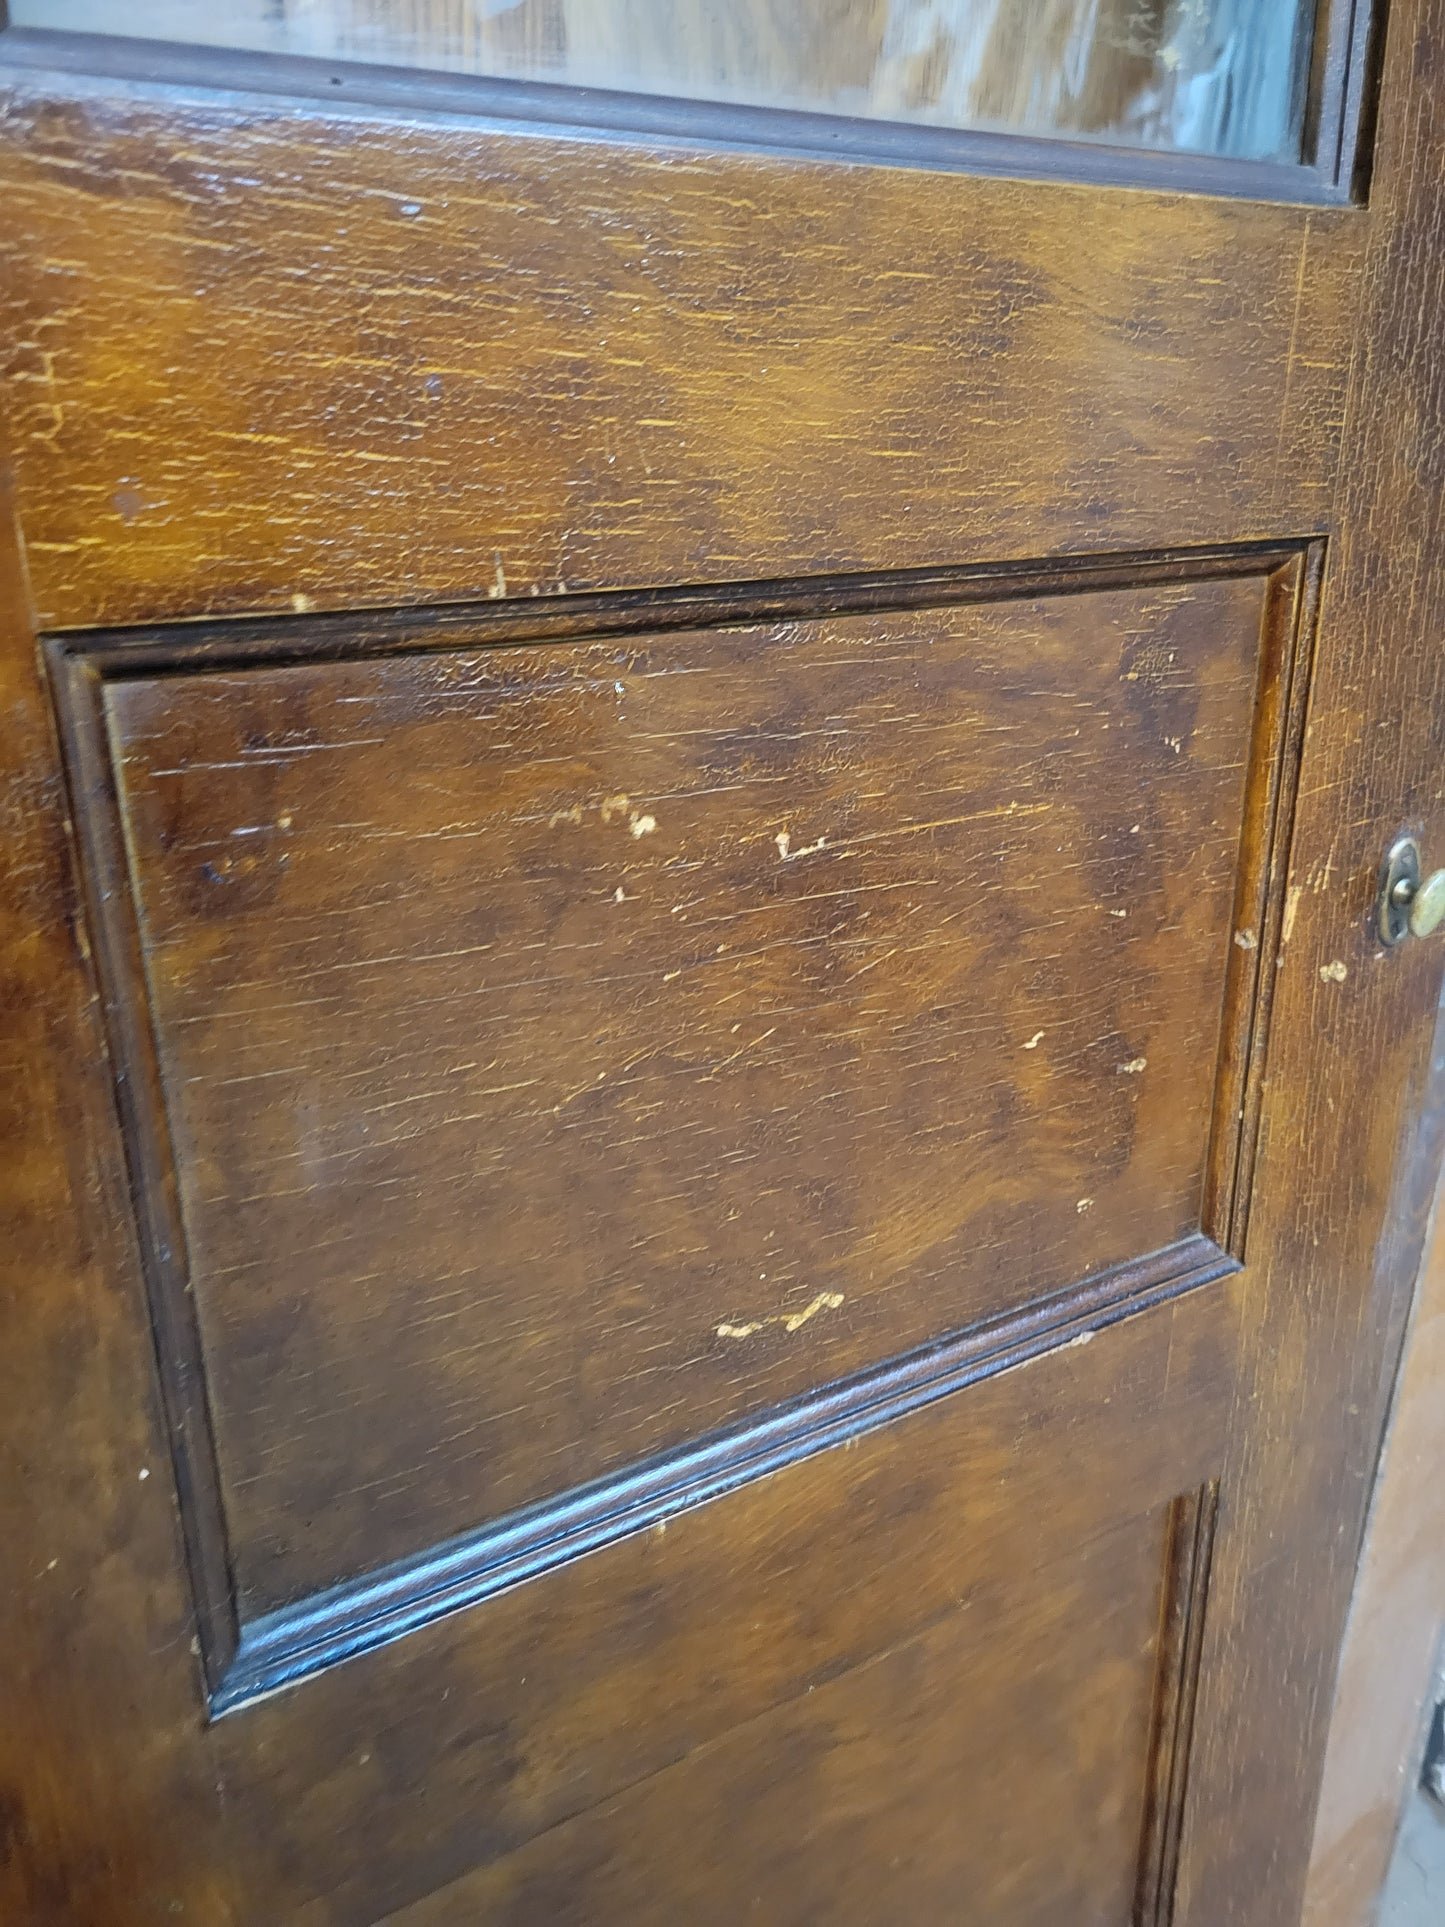 24" Narrow Vintage Swinging Door with Window, Wood and Glass Butler Style Door